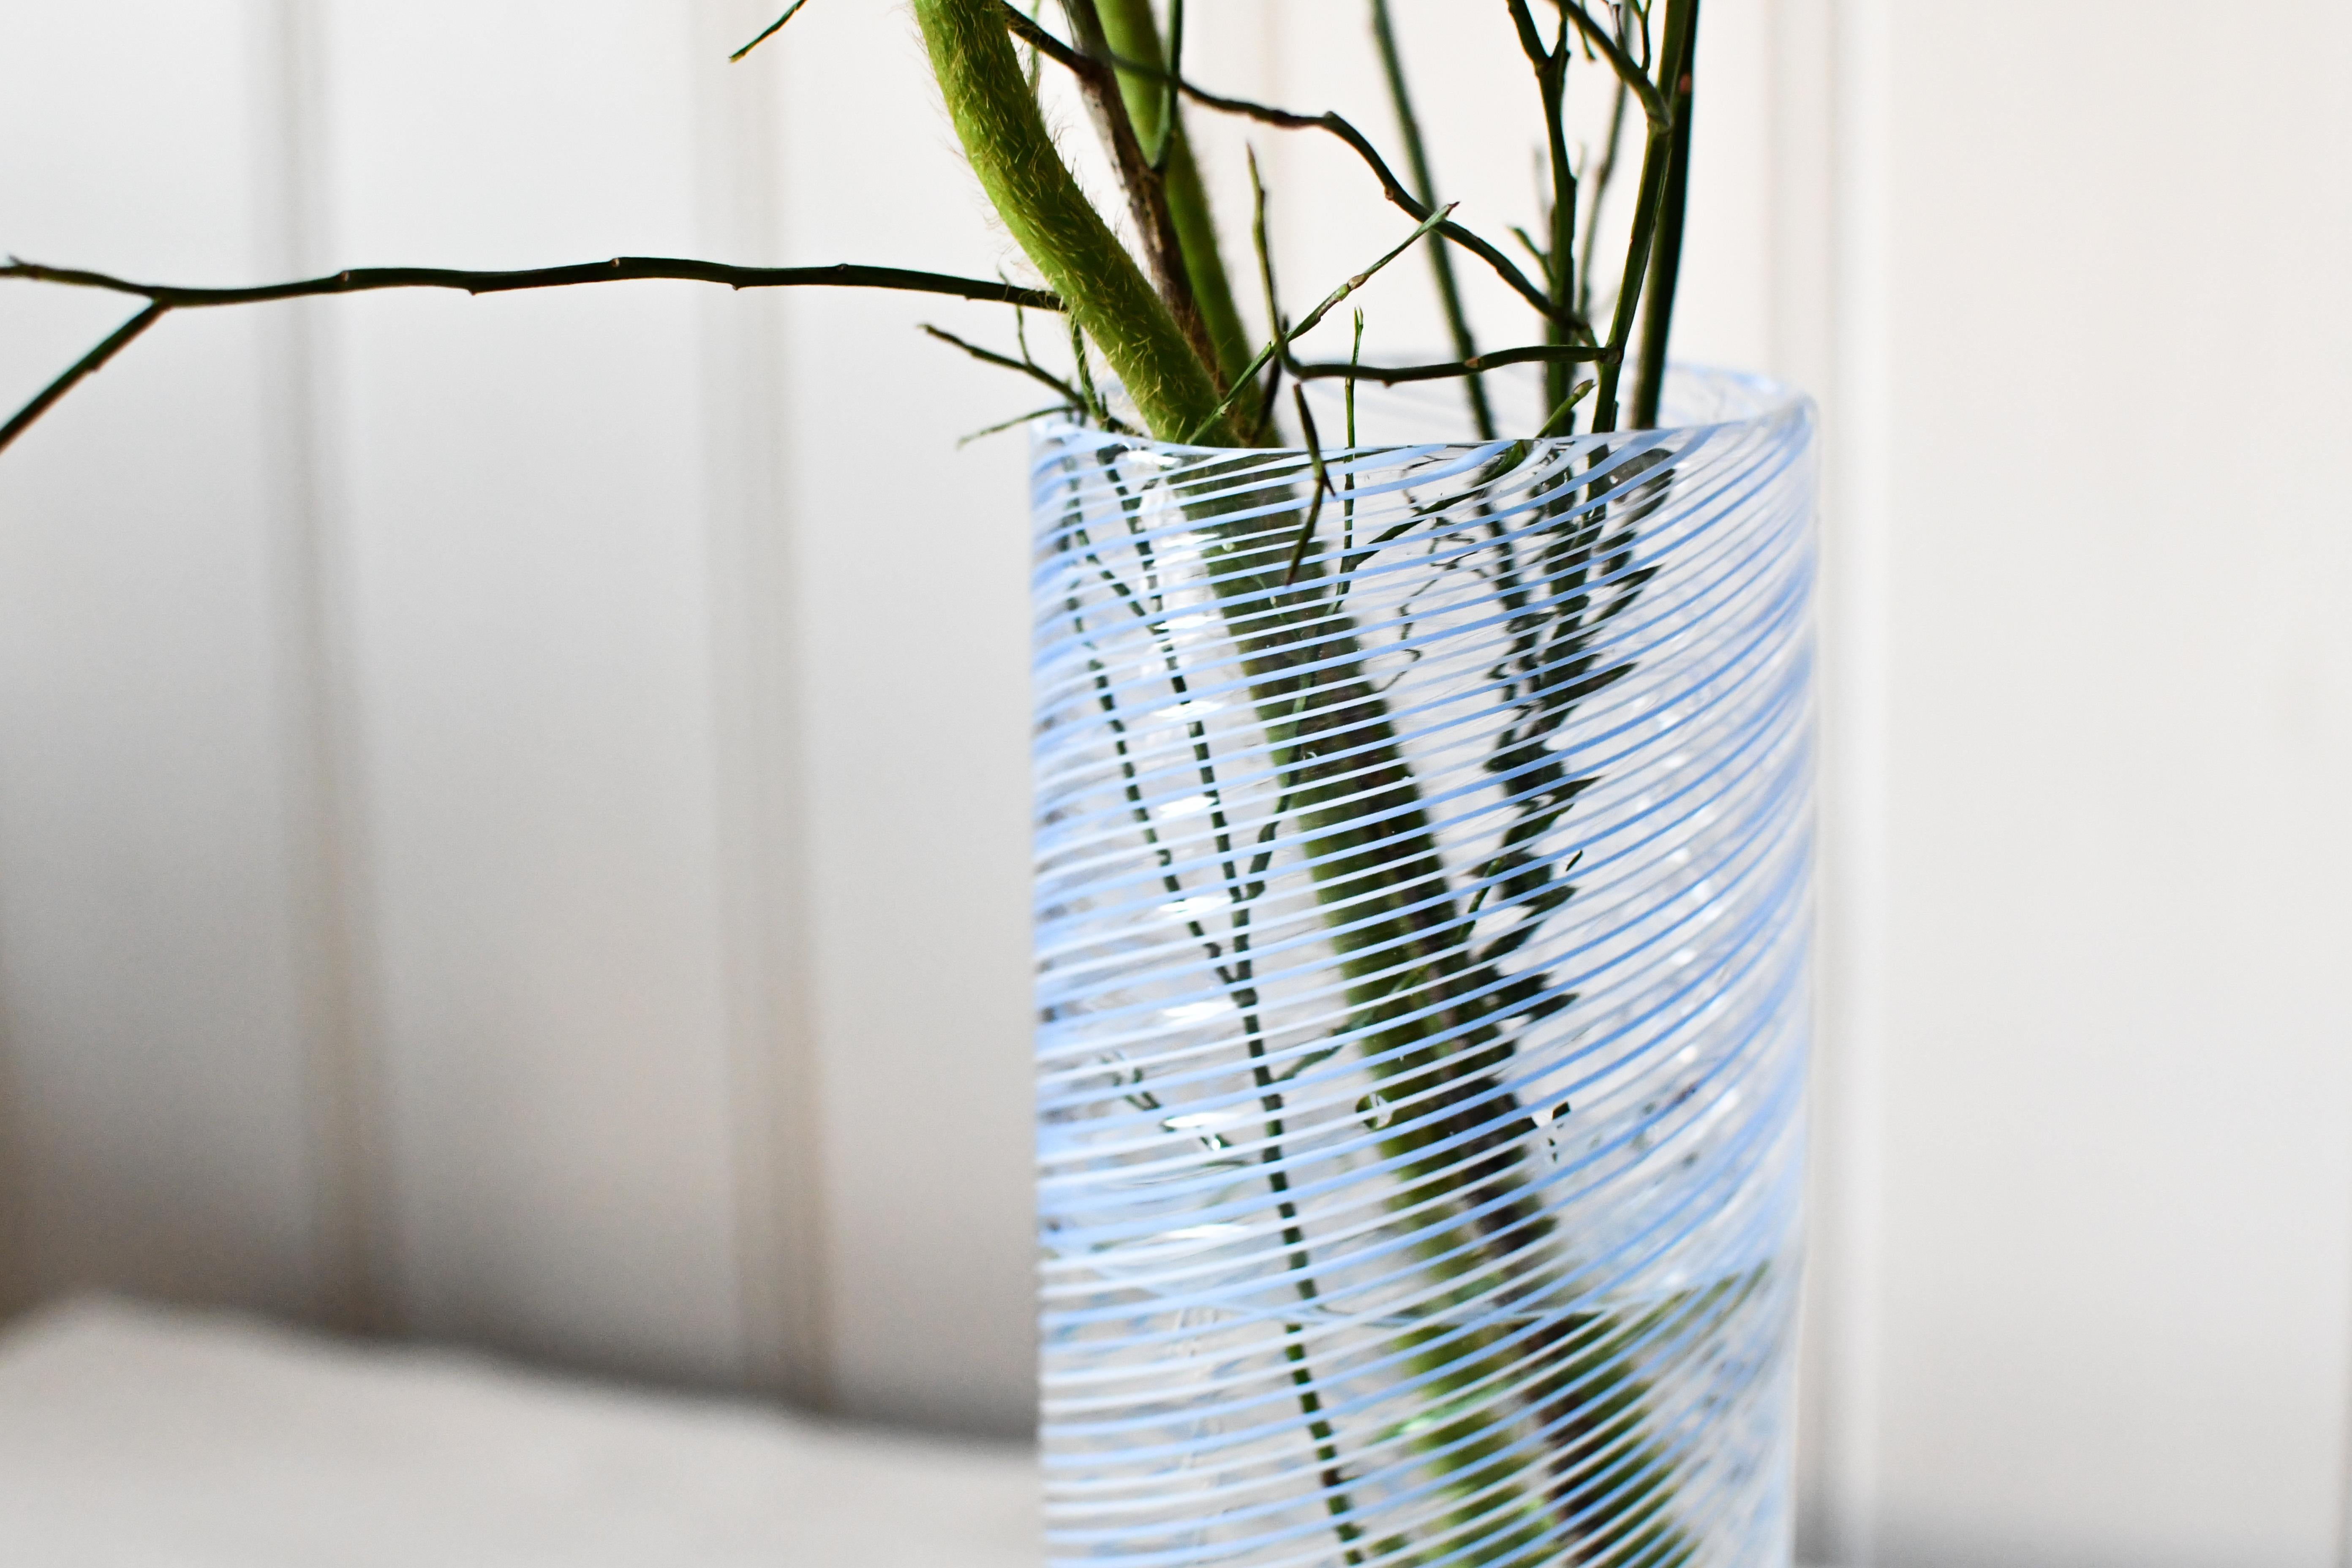 Swiss Contemporary Murano Glass Doppio Filo Vase, Periwinkle White by Laura Sattin For Sale